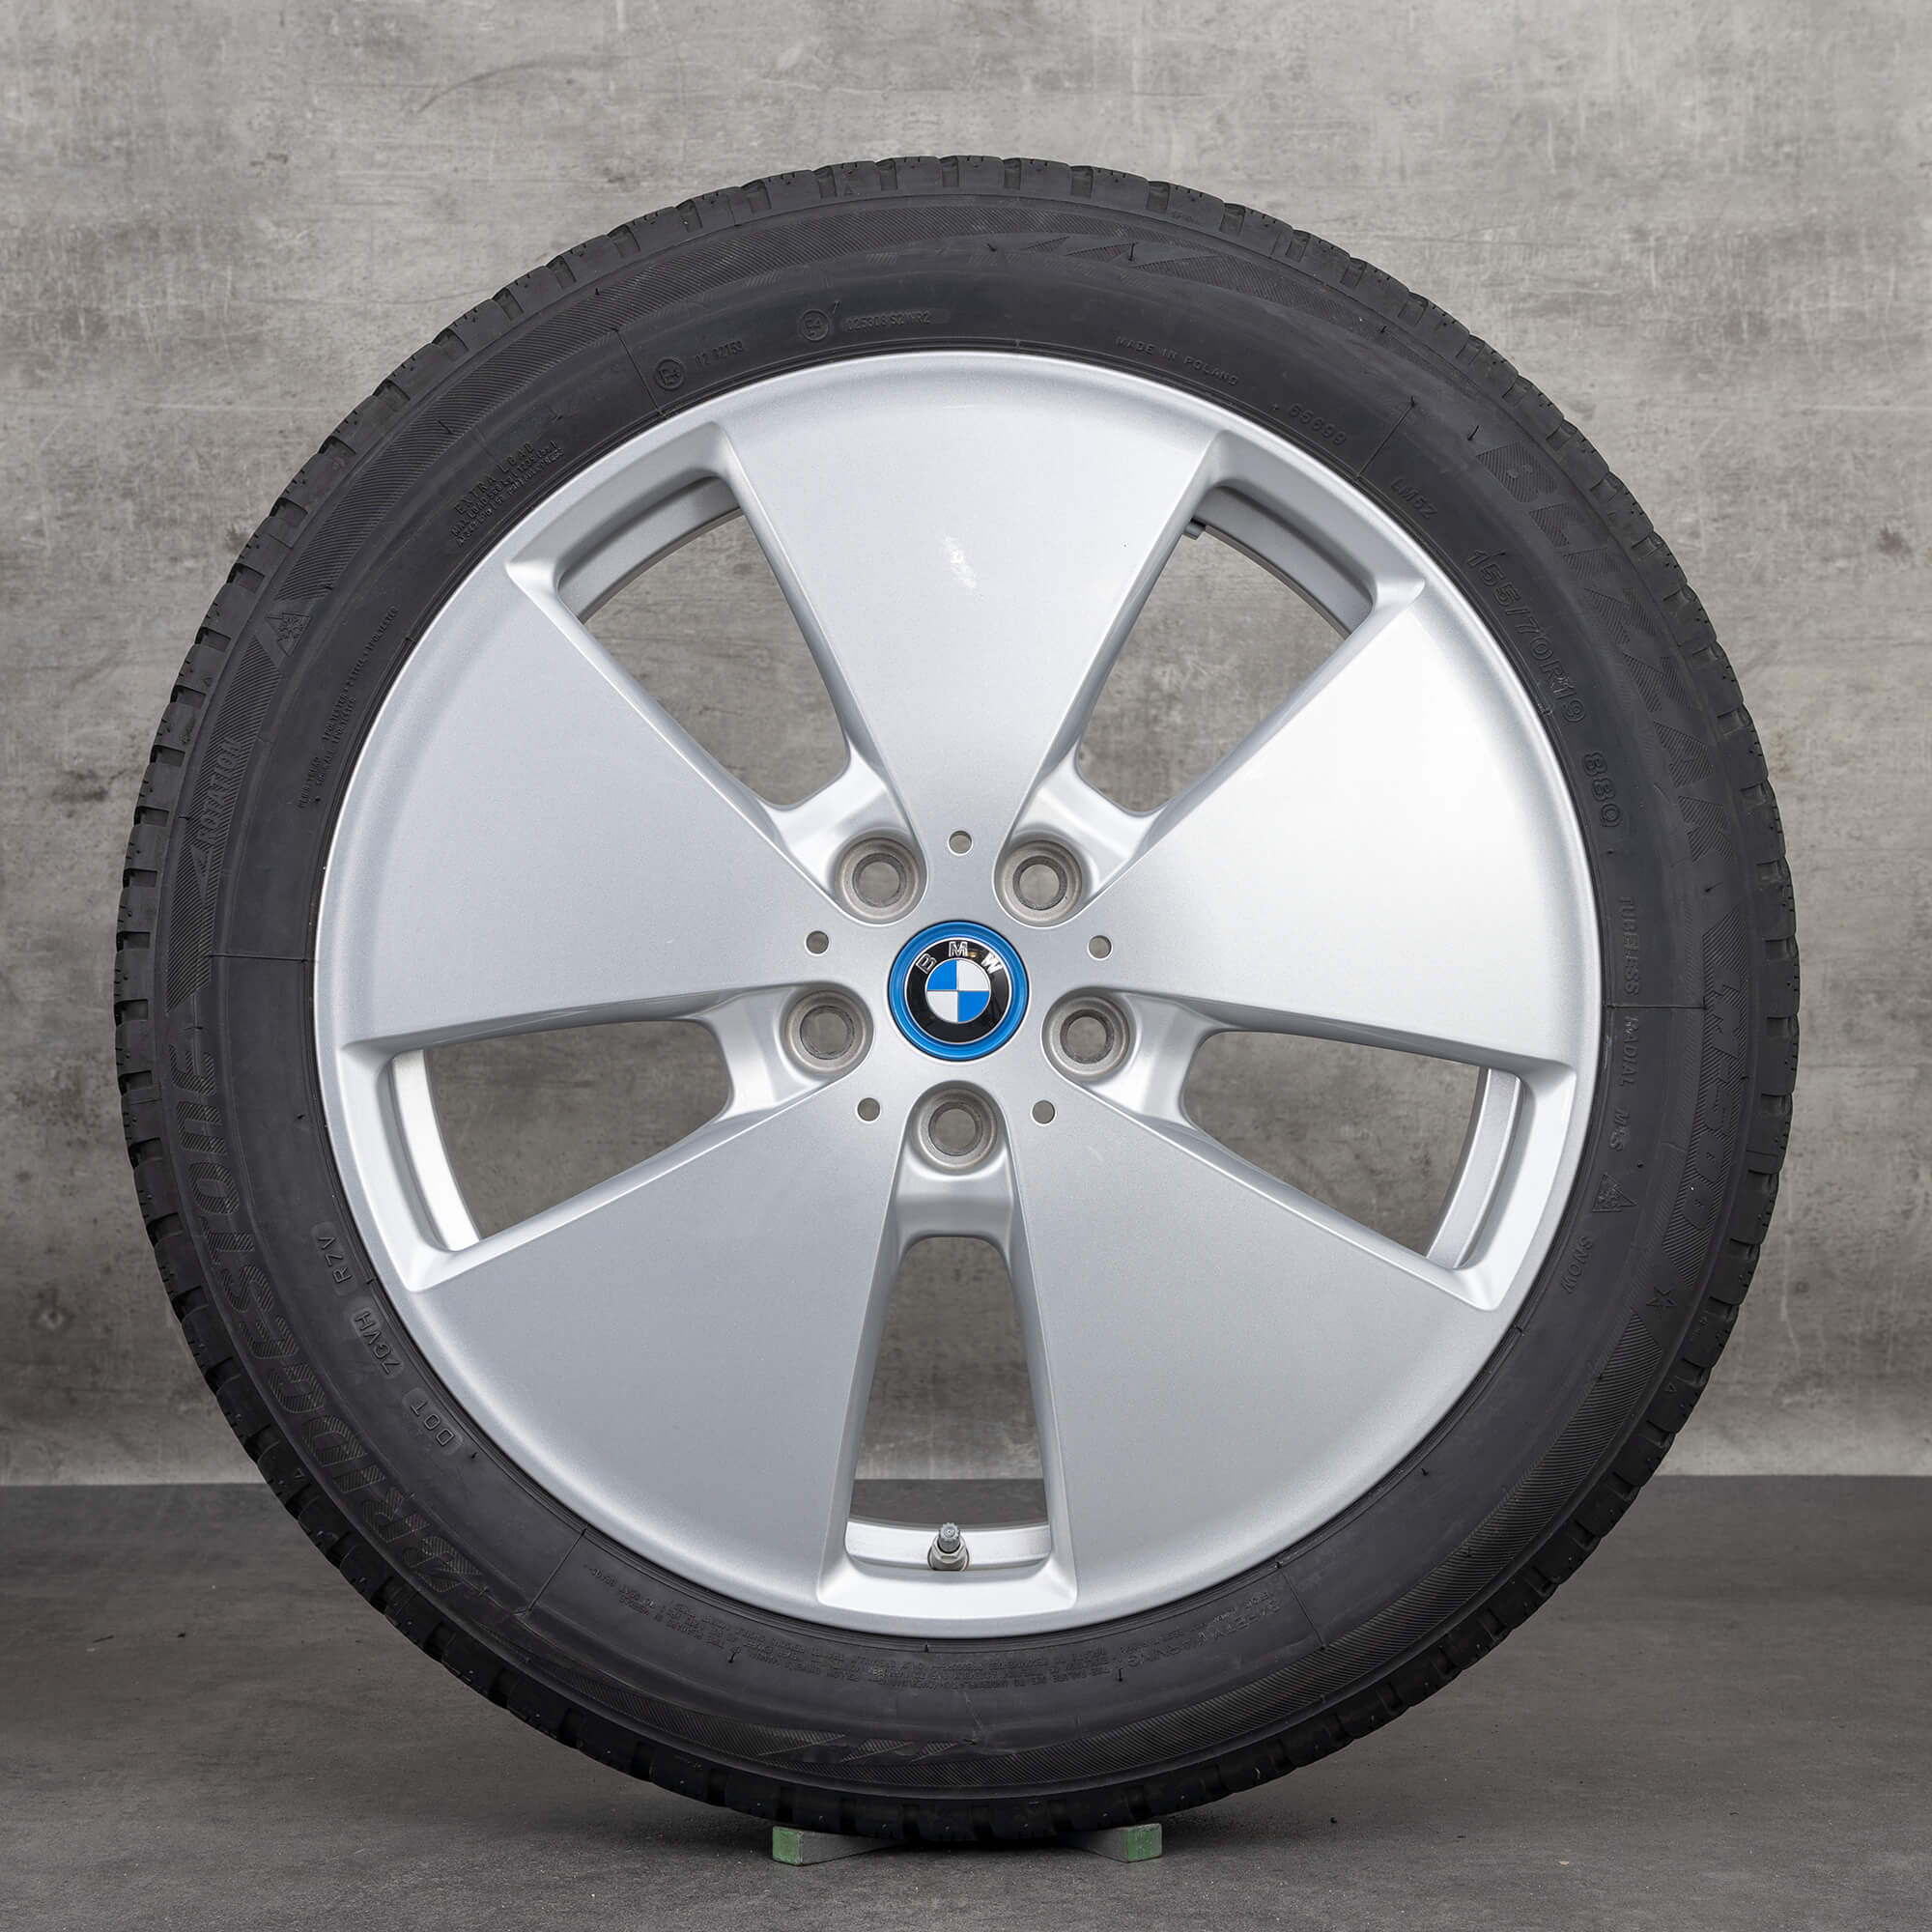 Jantes BMW de 19 polegadas i3 jantes alumínio estilo 427 pneus inverno rodas